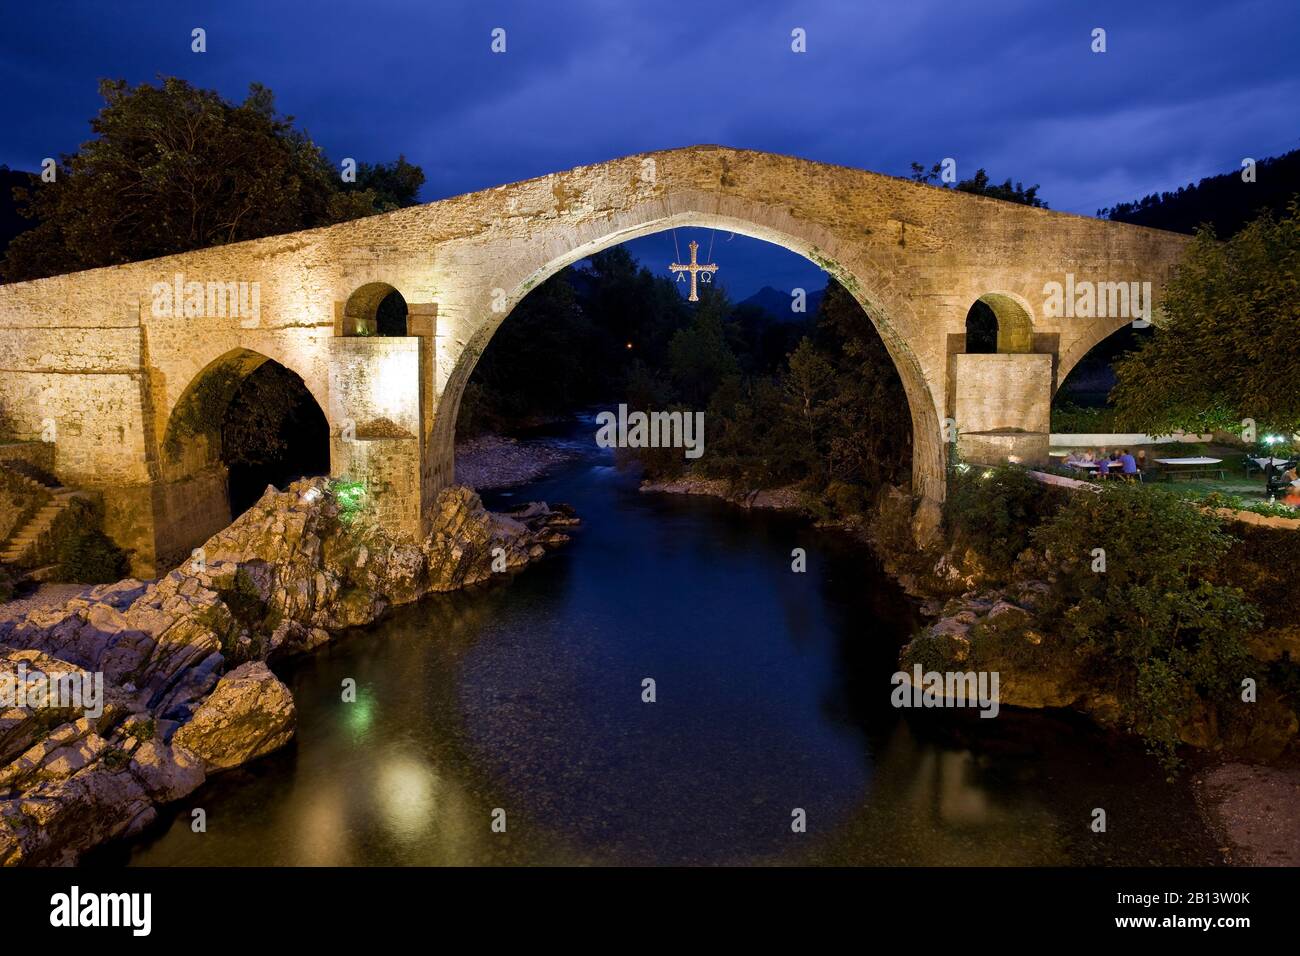 Römische Brücke mit dem Kreuz von Covadonga, Cangas de Onis, Asturien, Spanien. Stockfoto